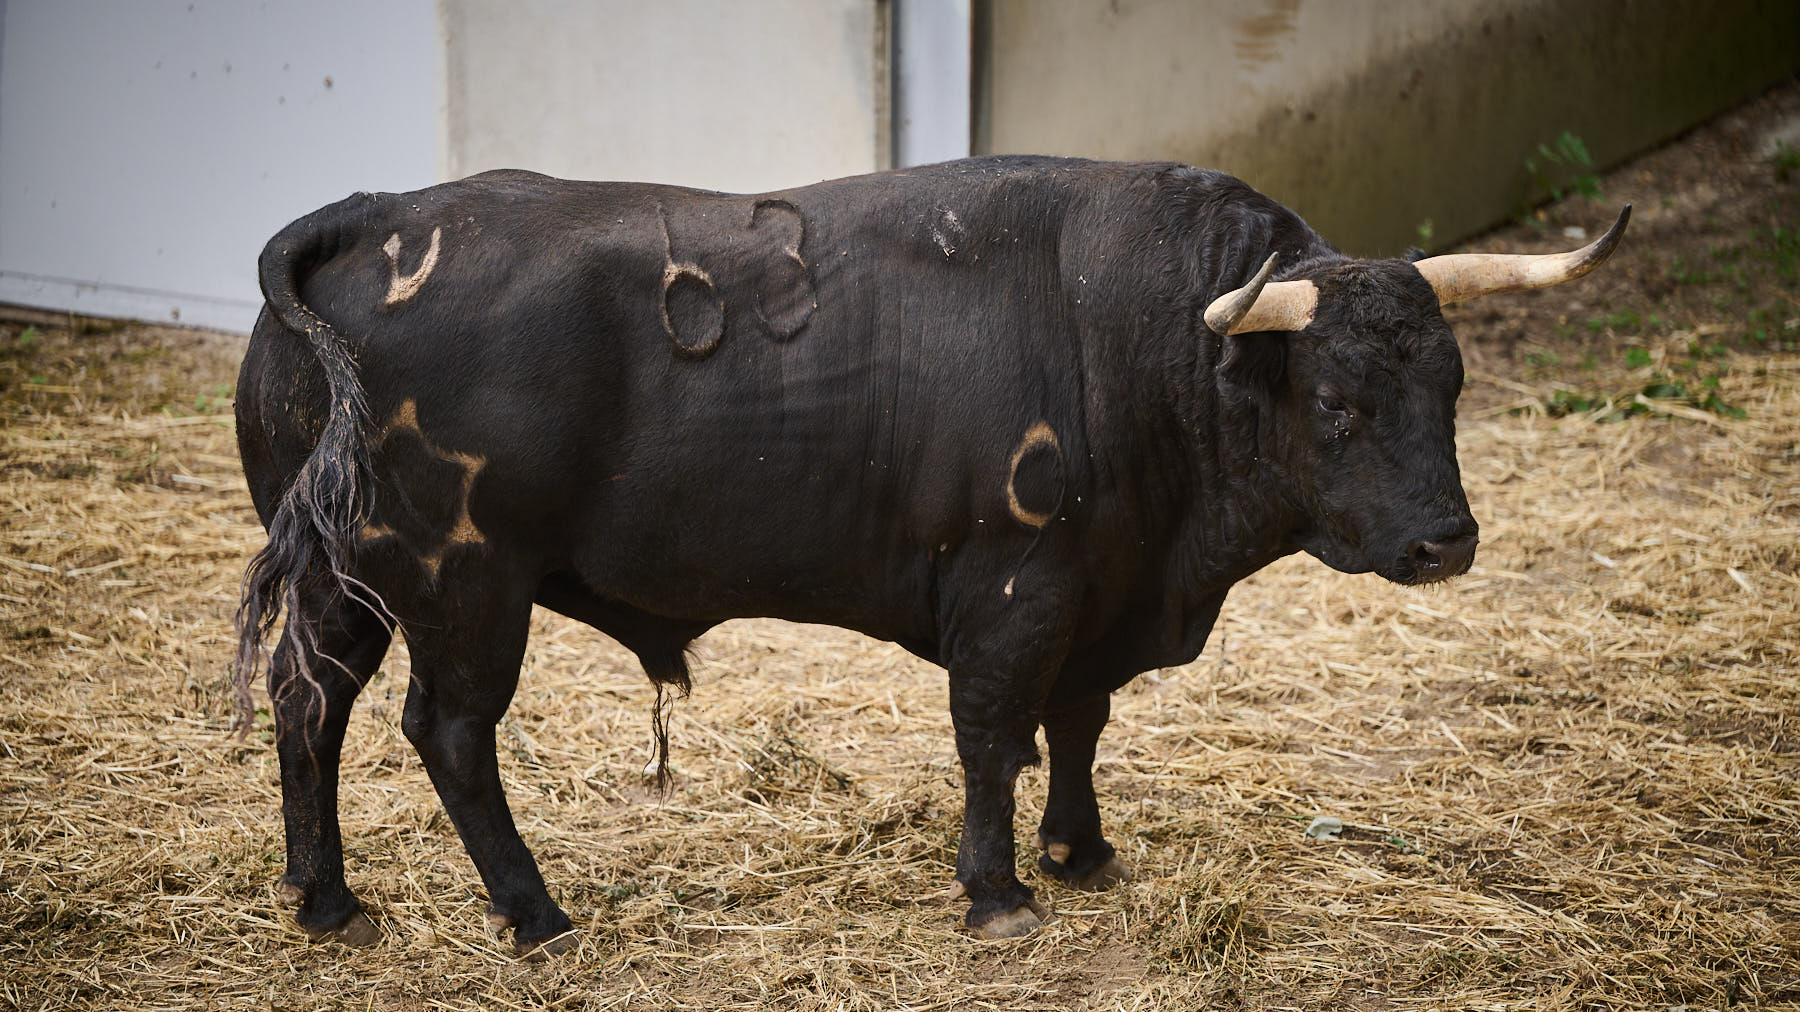 El toro 'Torbellino' (nº63) de la ganadería de Jandilla (12 de julio) y de 580 kilos de peso en los corrales del Gas de Pamplona. PABLO LASAOSA